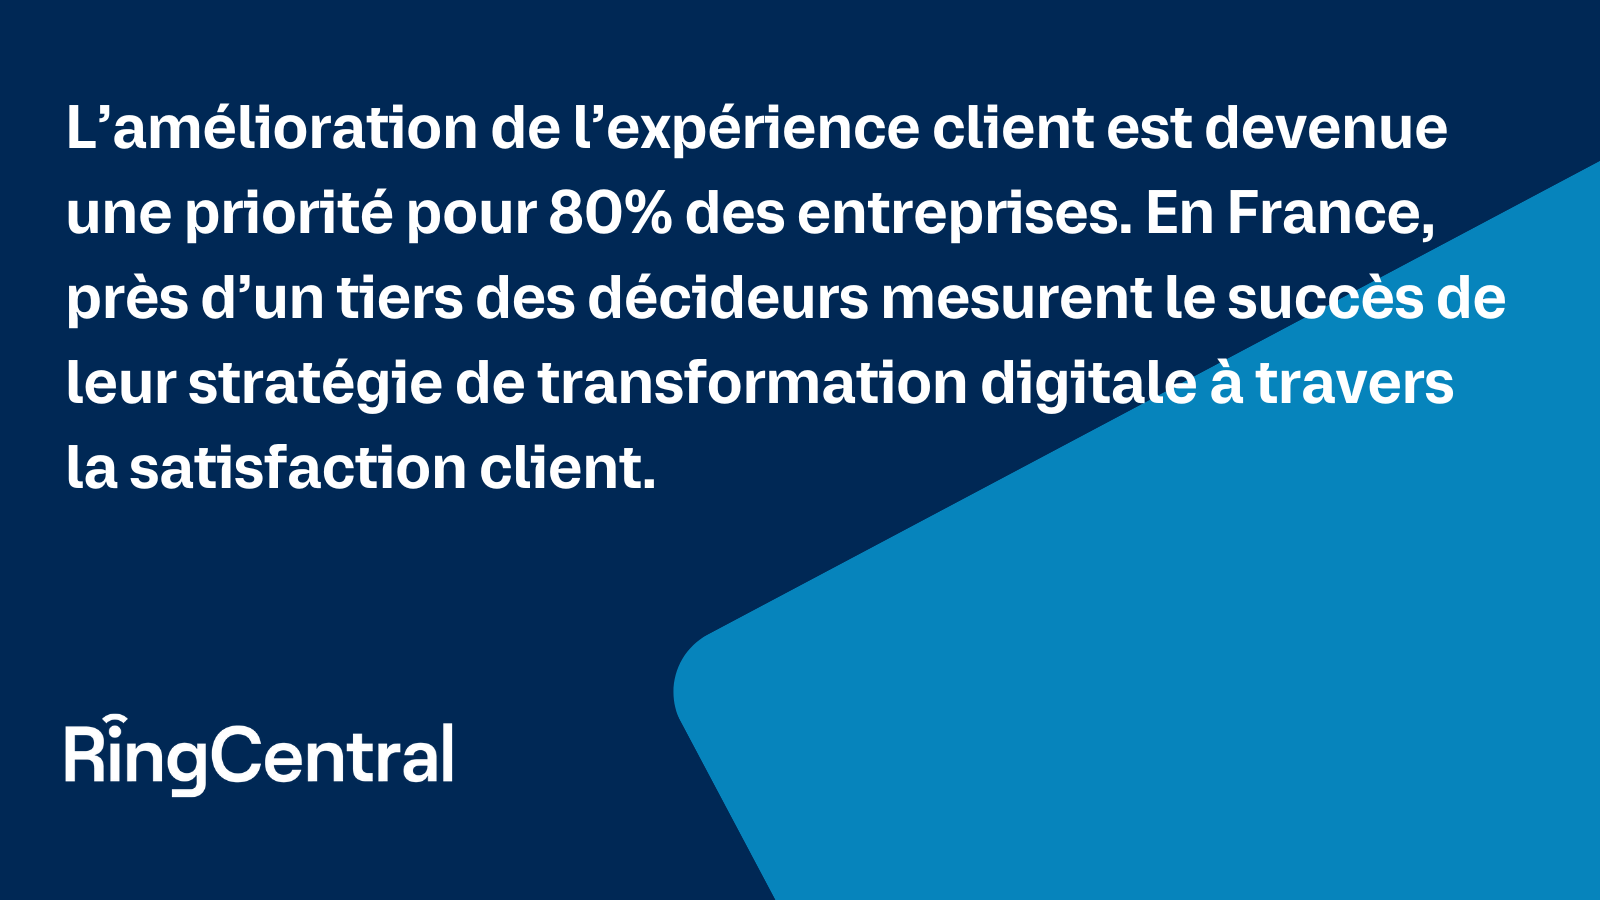 D’autant plus que l’amélioration de l’expérience client est devenue une priorité pour 80% des entreprises. En France, près d’un tiers des décideurs mesurent le succès de leur stratégie de transformation digitale à travers la satisfaction client.